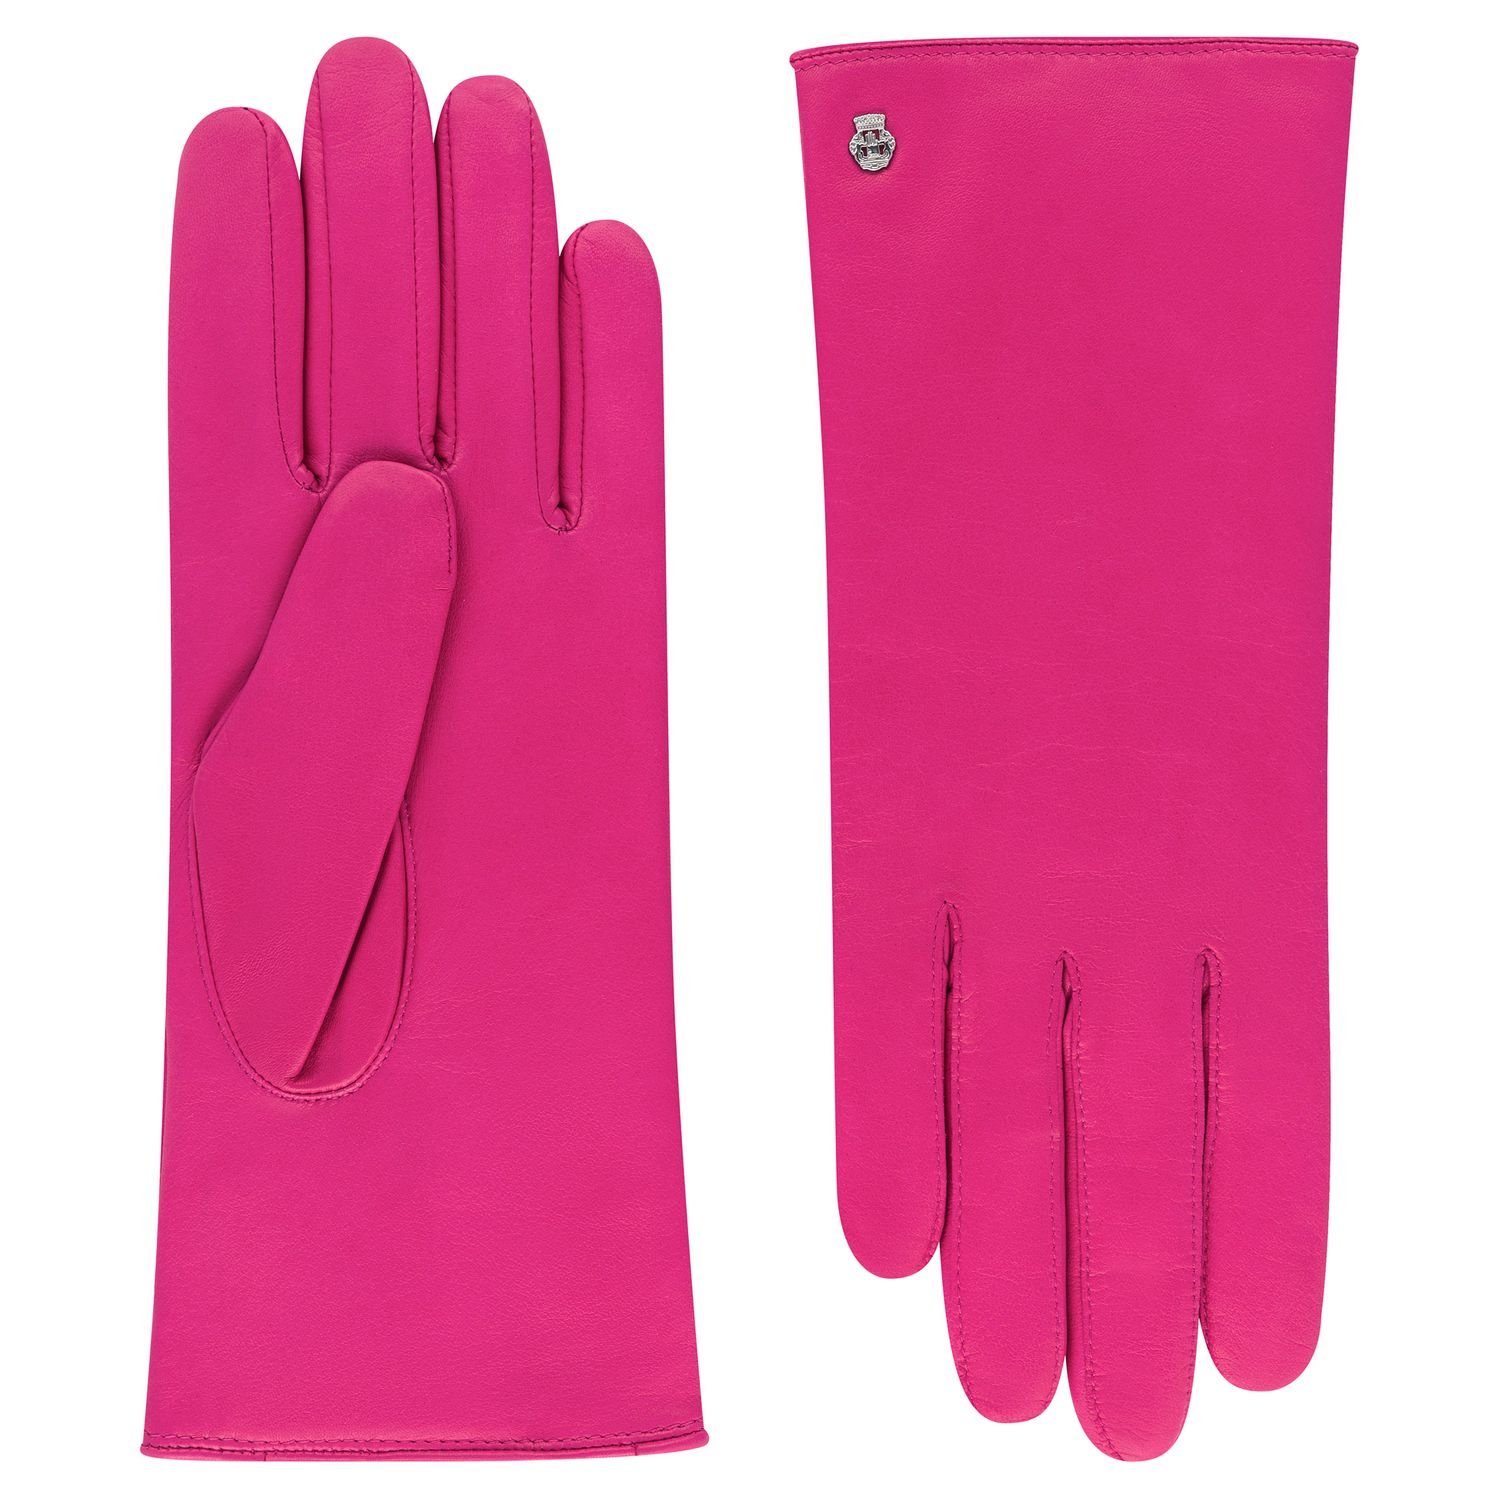 Roeckl Lederhandschuhe Wolle 310-candy und Futtermix Leder-Handschuhe Kaschmir aus